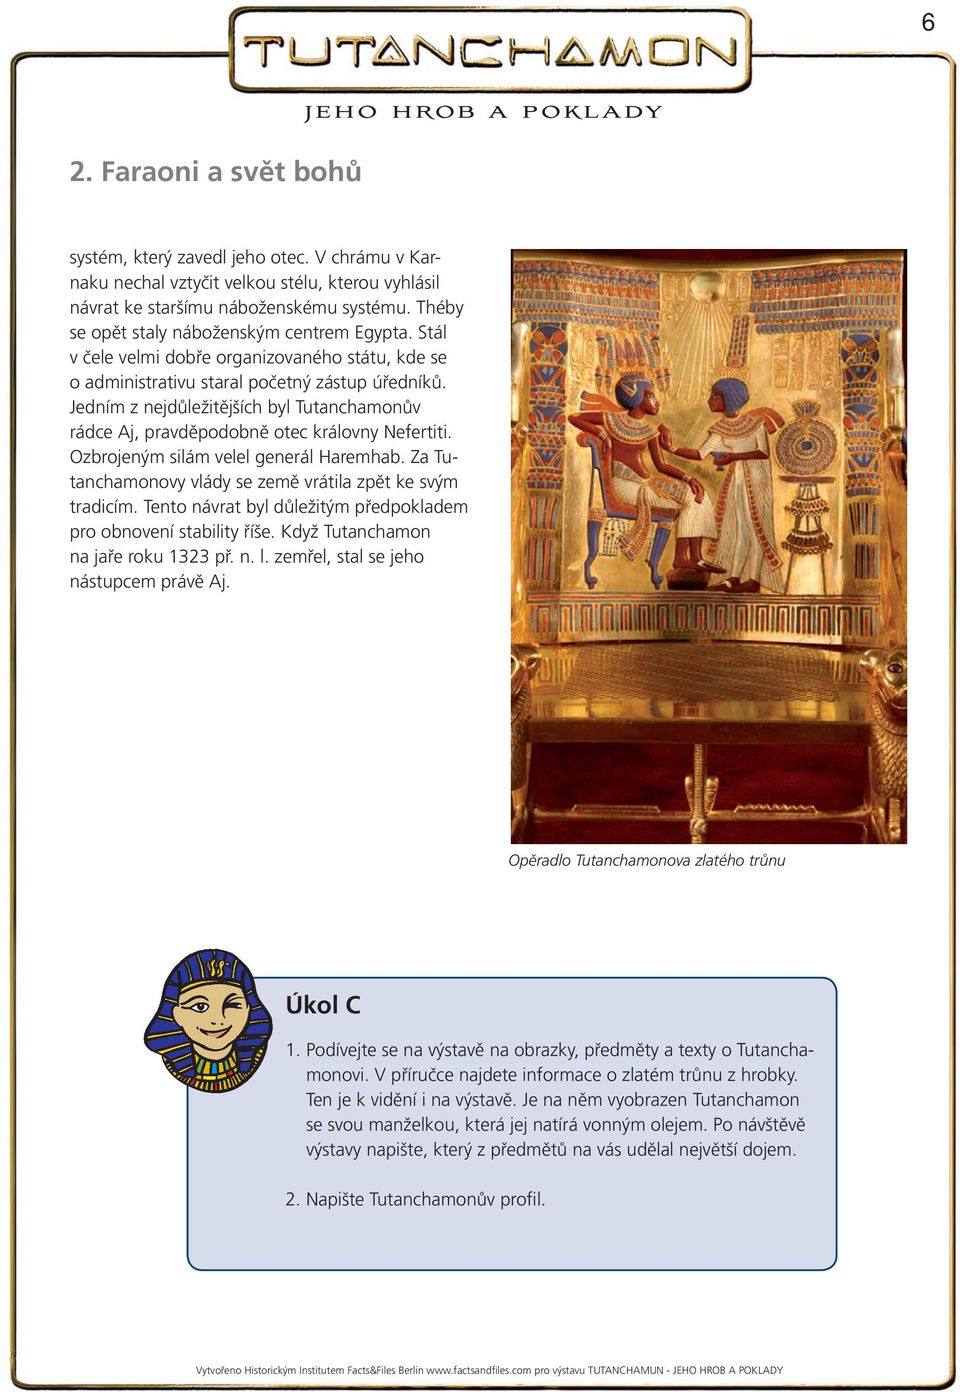 Jedním z nejdůležitějších byl Tutanchamonův rádce Aj, pravděpodobně otec královny Nefertiti. Ozbrojeným silám velel generál Haremhab. Za Tutanchamonovy vlády se země vrátila zpět ke svým tradicím.